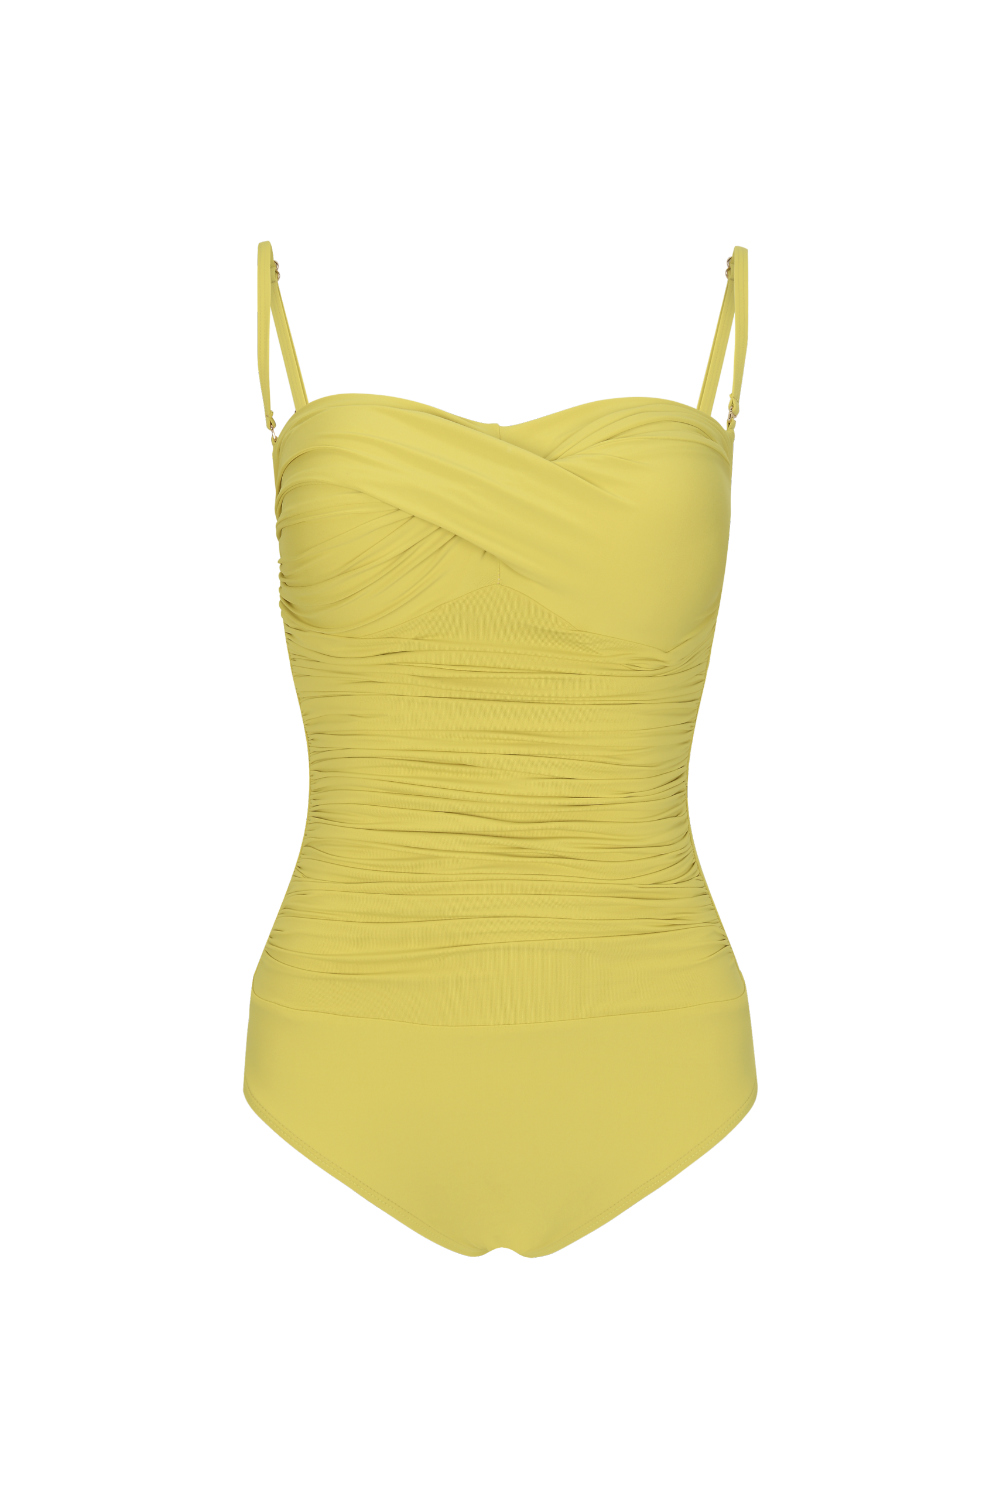 swim wear/inner wear yellow color image-S2L3